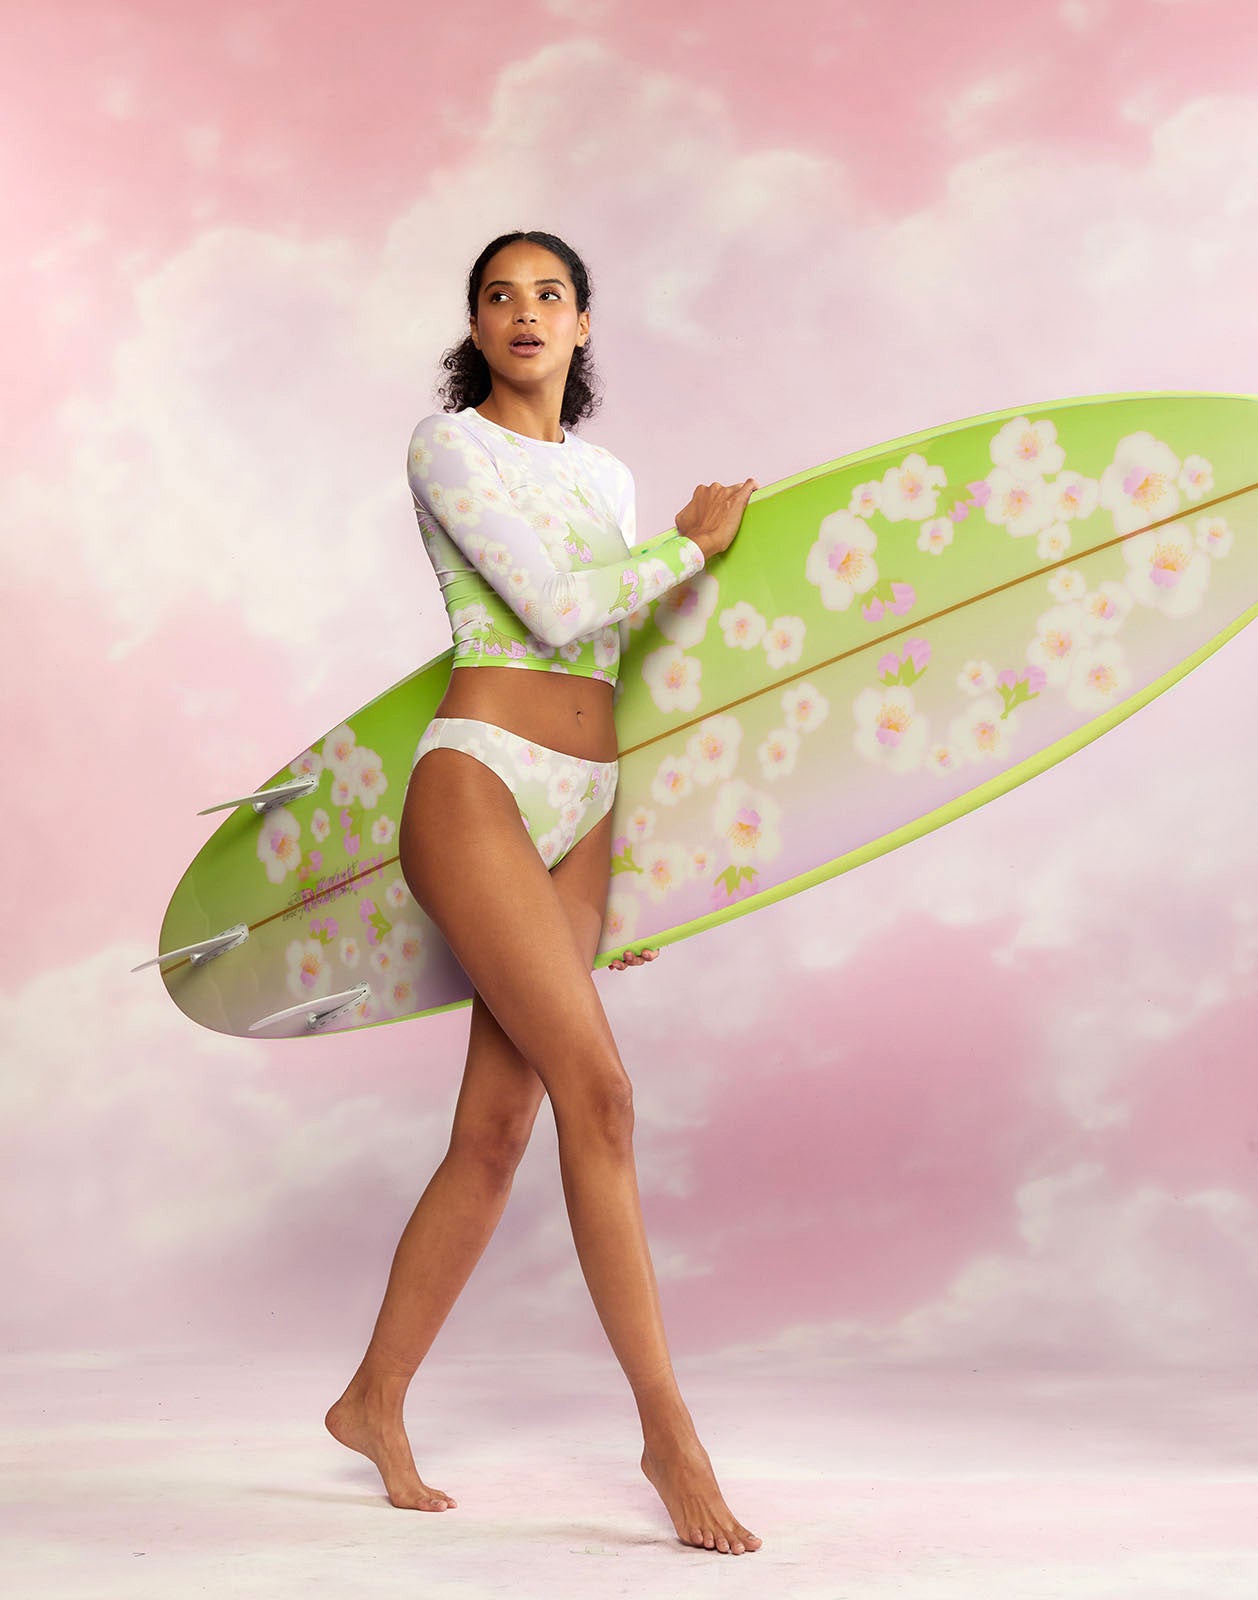 Custom Short Surfboard - Cheery Blossom